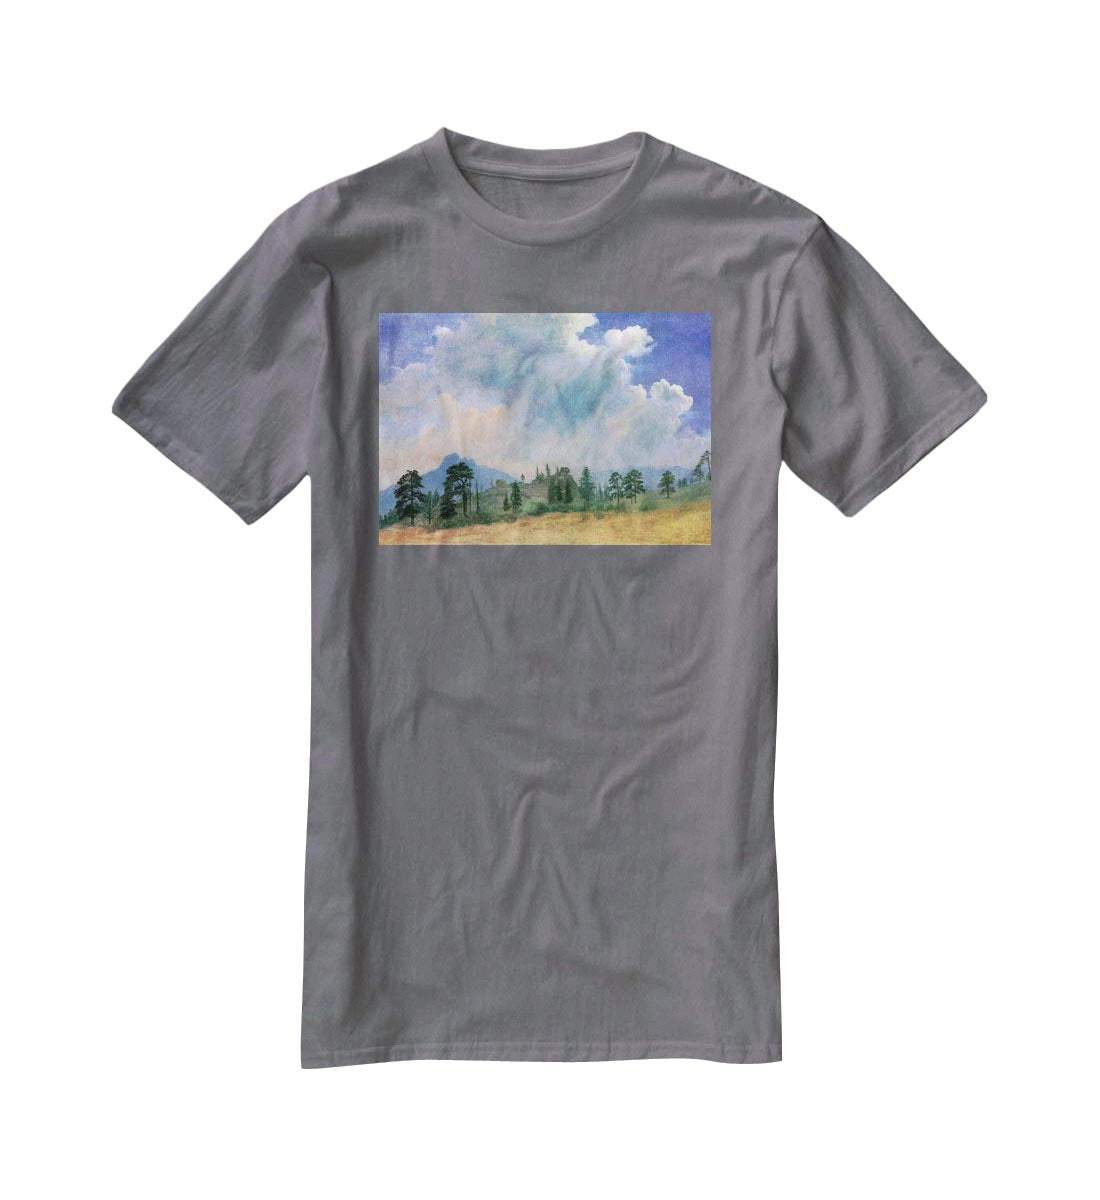 Fir trees and storm clouds by Bierstadt T-Shirt - Canvas Art Rocks - 3